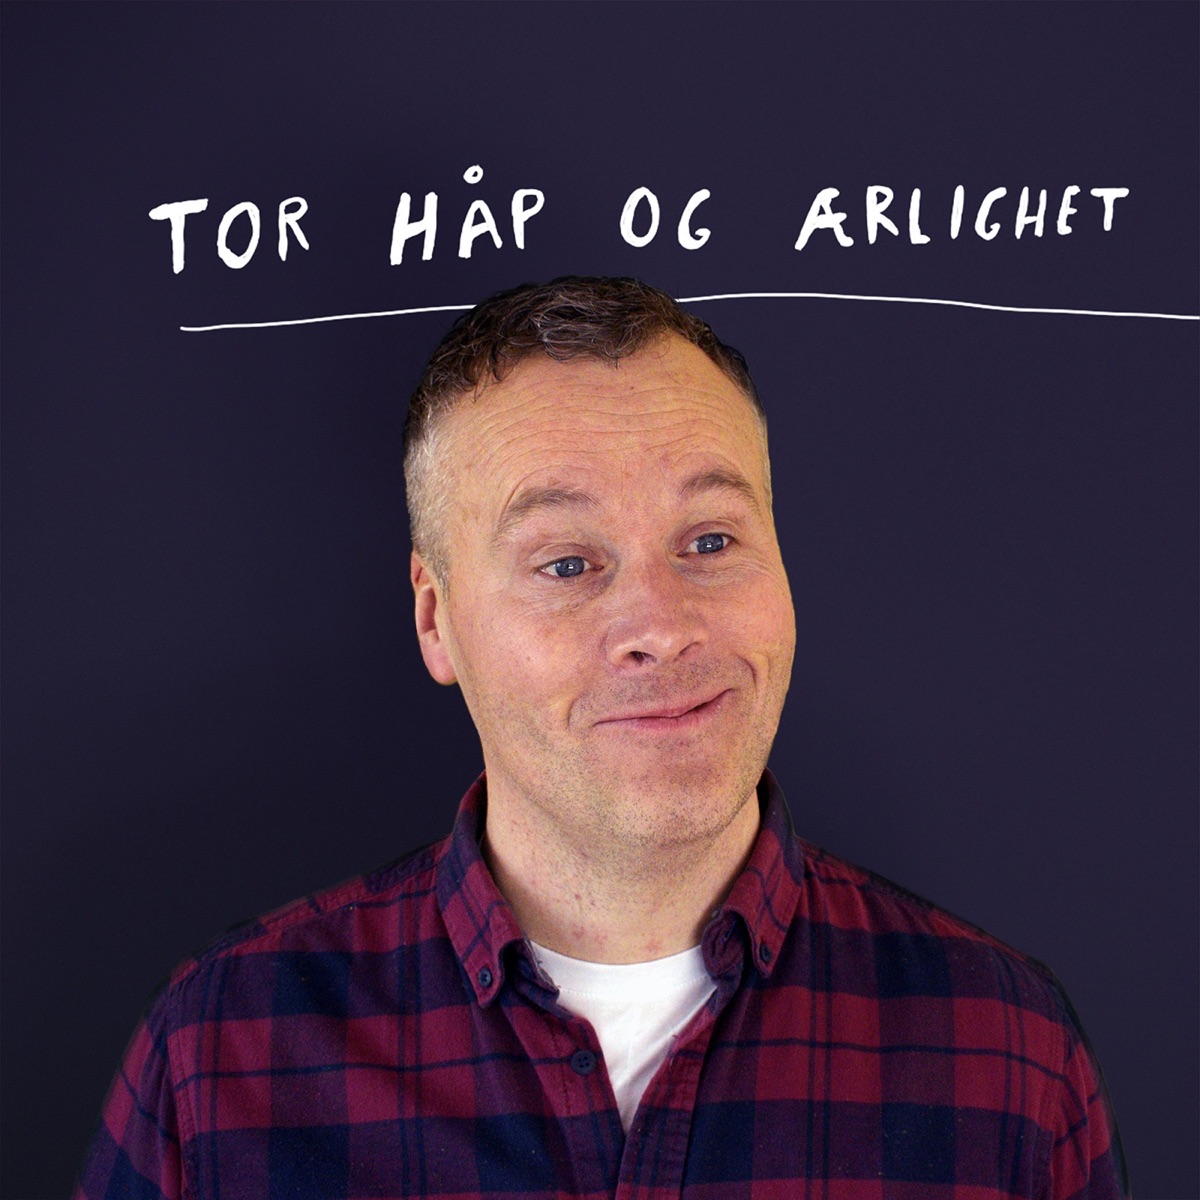 Tor håp og ærlighet – Podcast